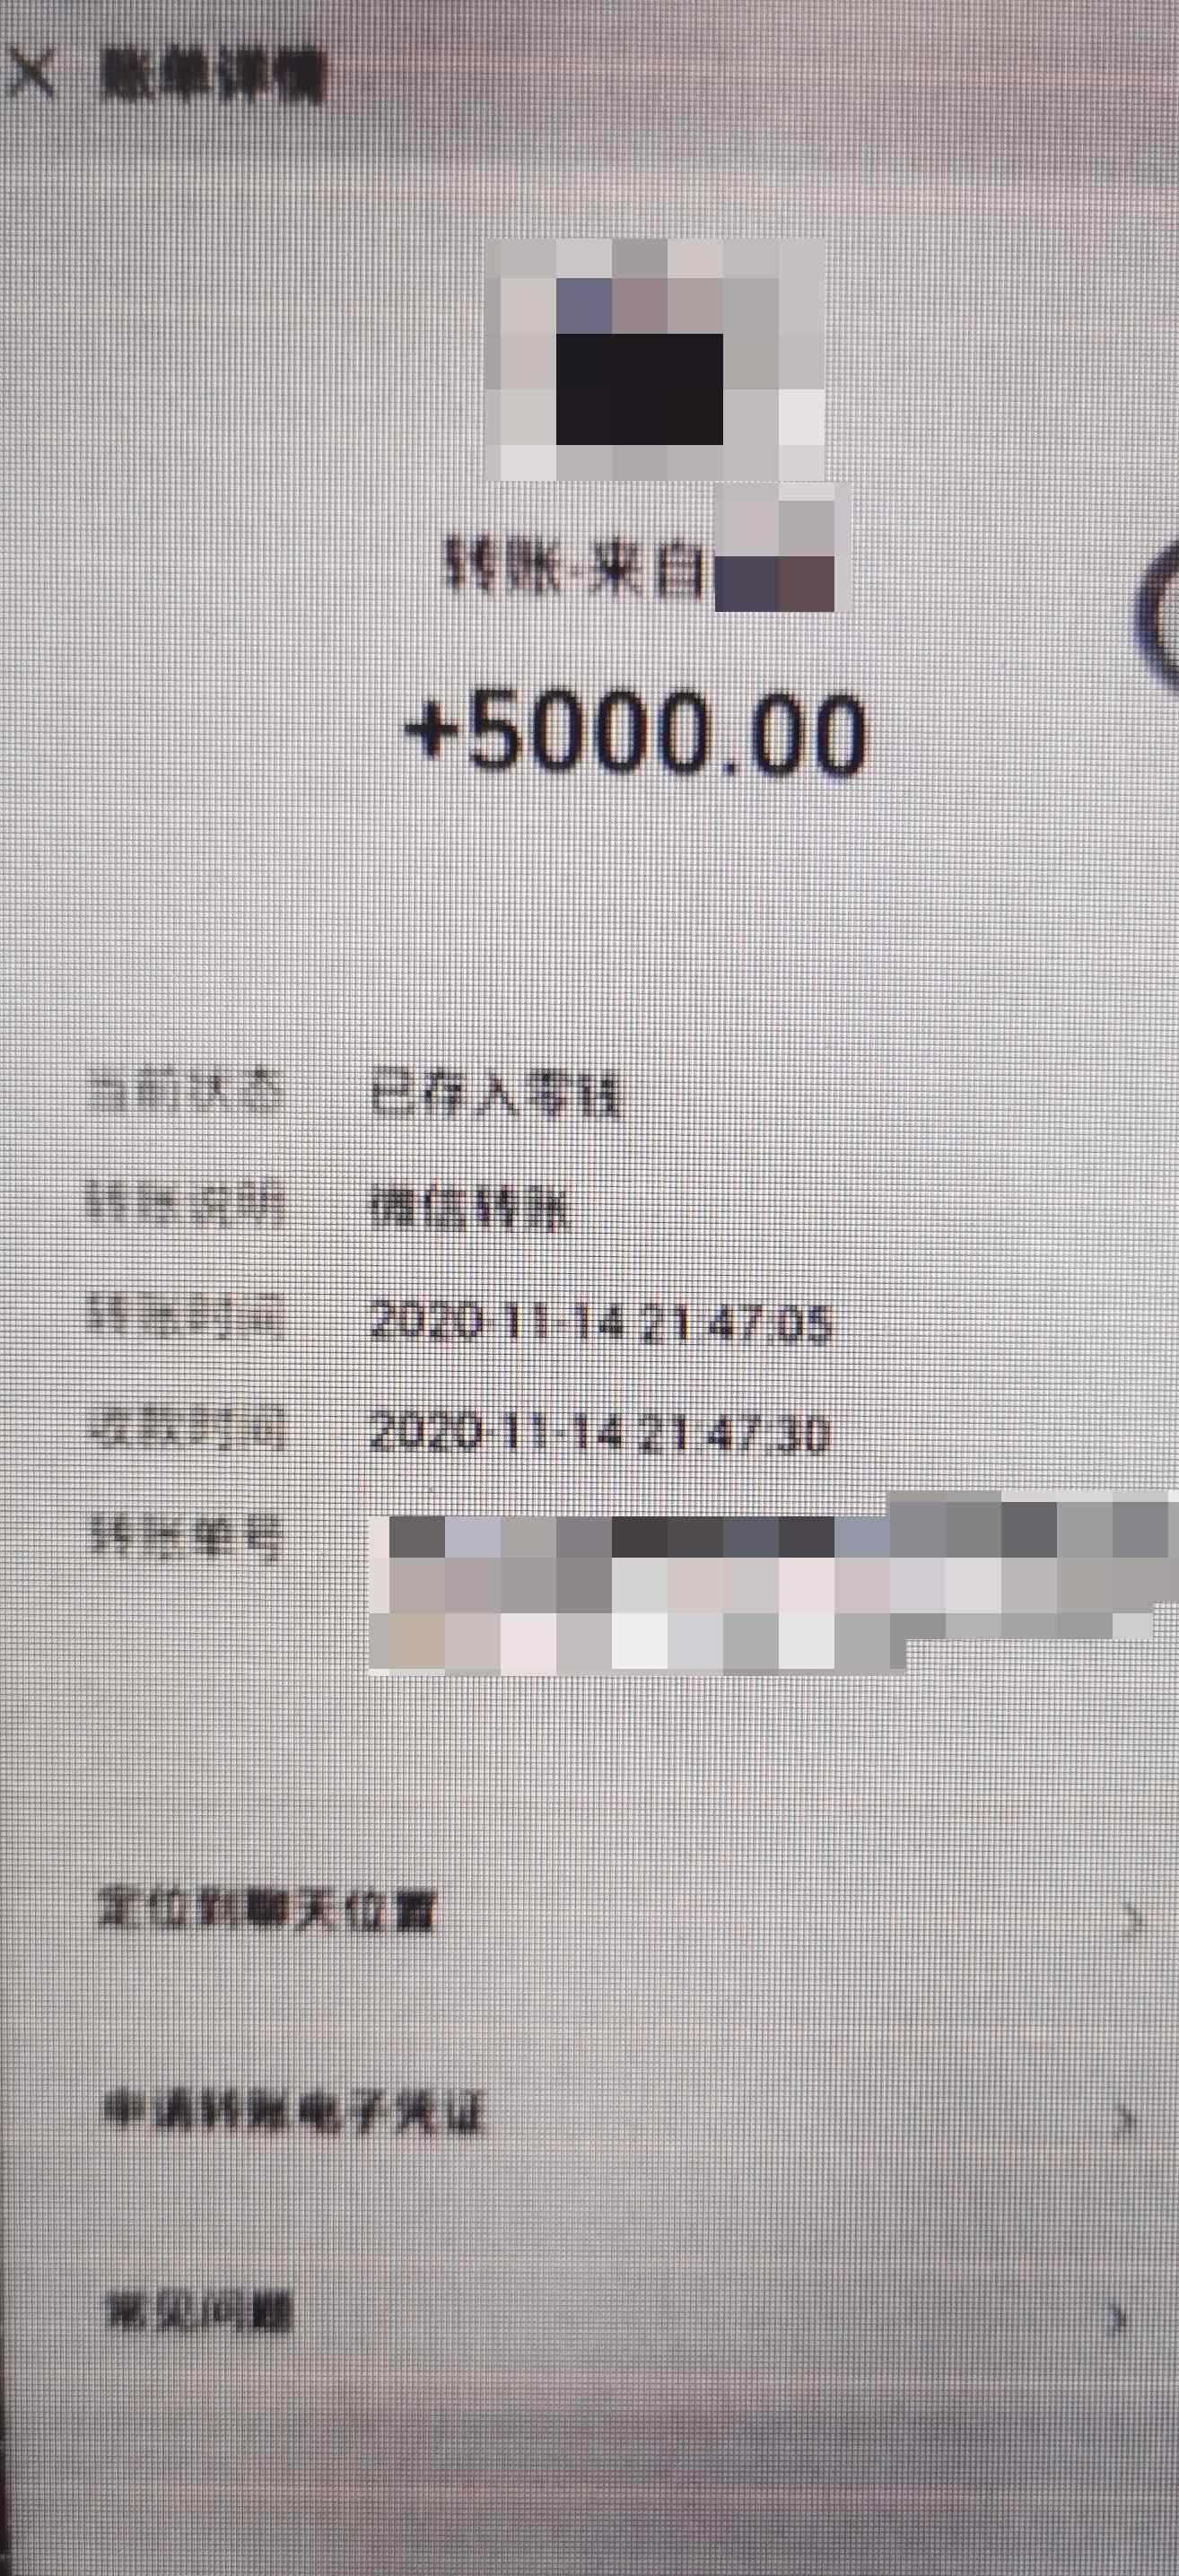 恶意举报上海某店“提供色情服务”  女子敲诈店家获刑八个月